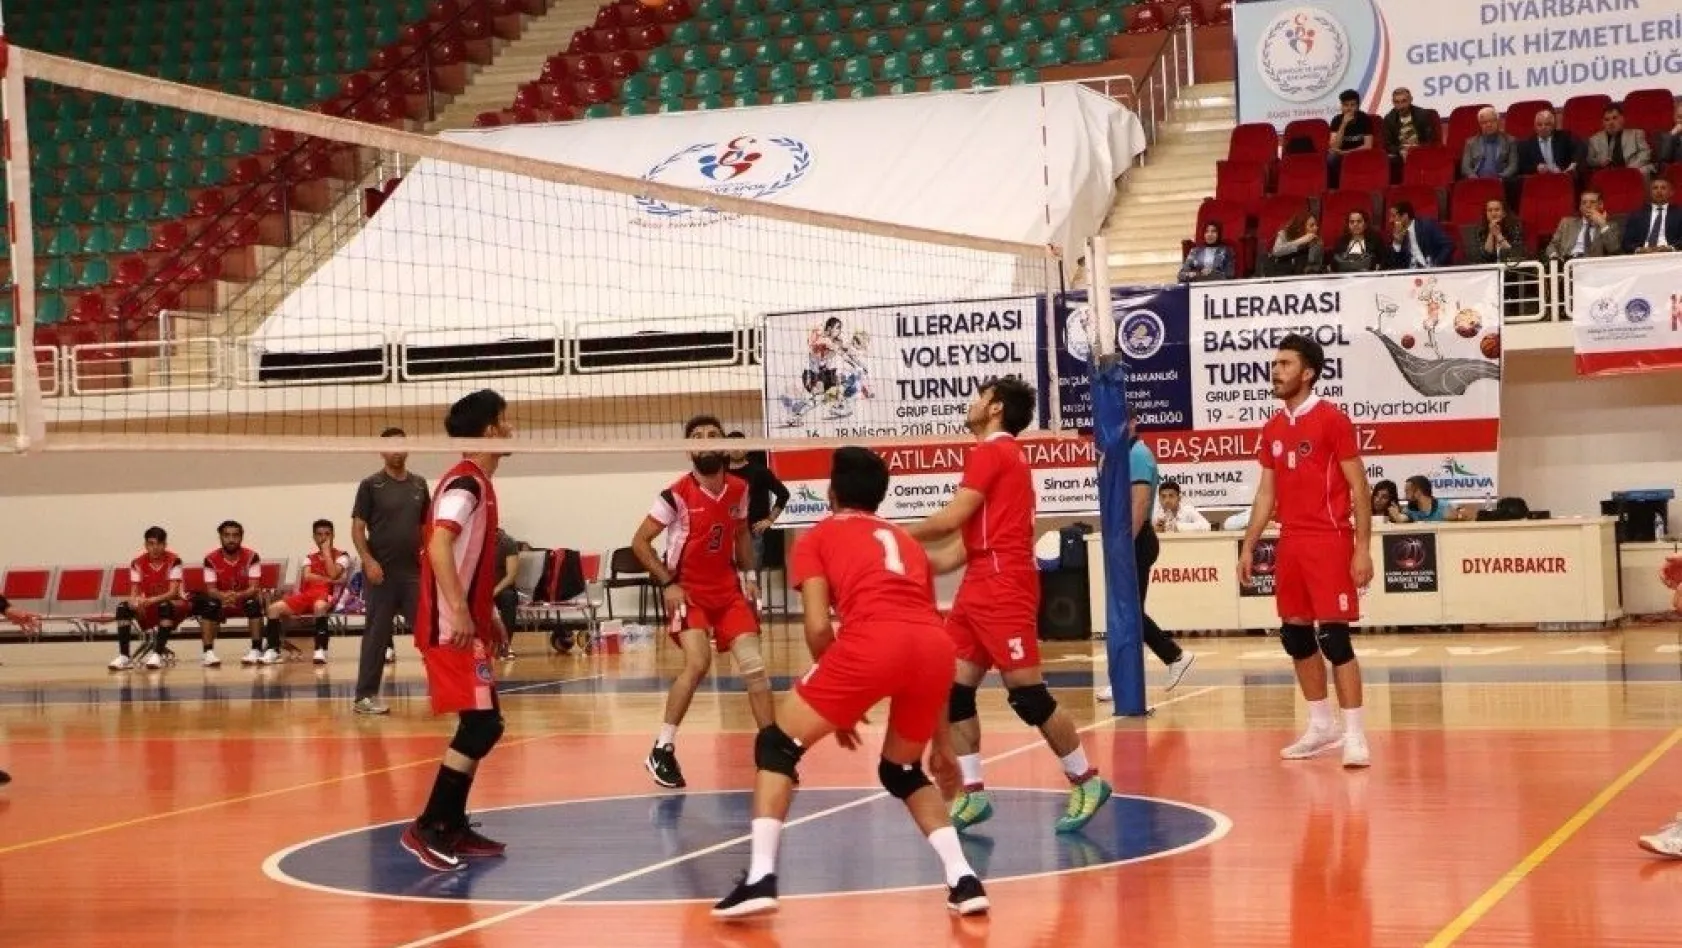 Diyarbakır'da spor turnuvaları başlıyor
